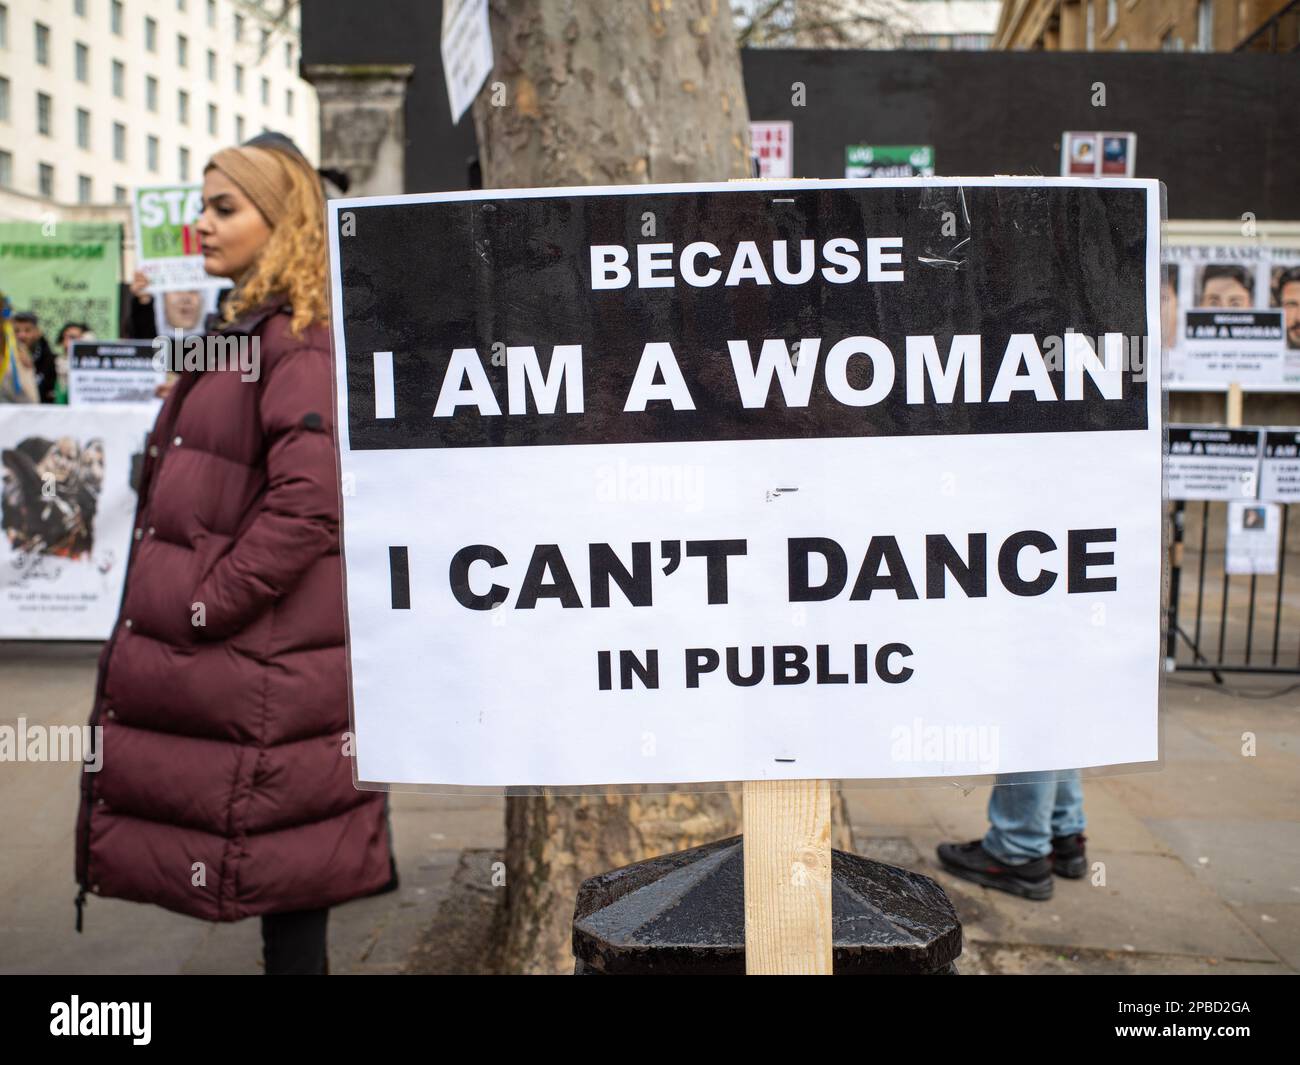 Protestation à Londres contre le régime oppressif iranien, une femme se tient à côté d'une pancarte qui dit "parce que je suis une femme, je ne peux pas danser en public". Banque D'Images